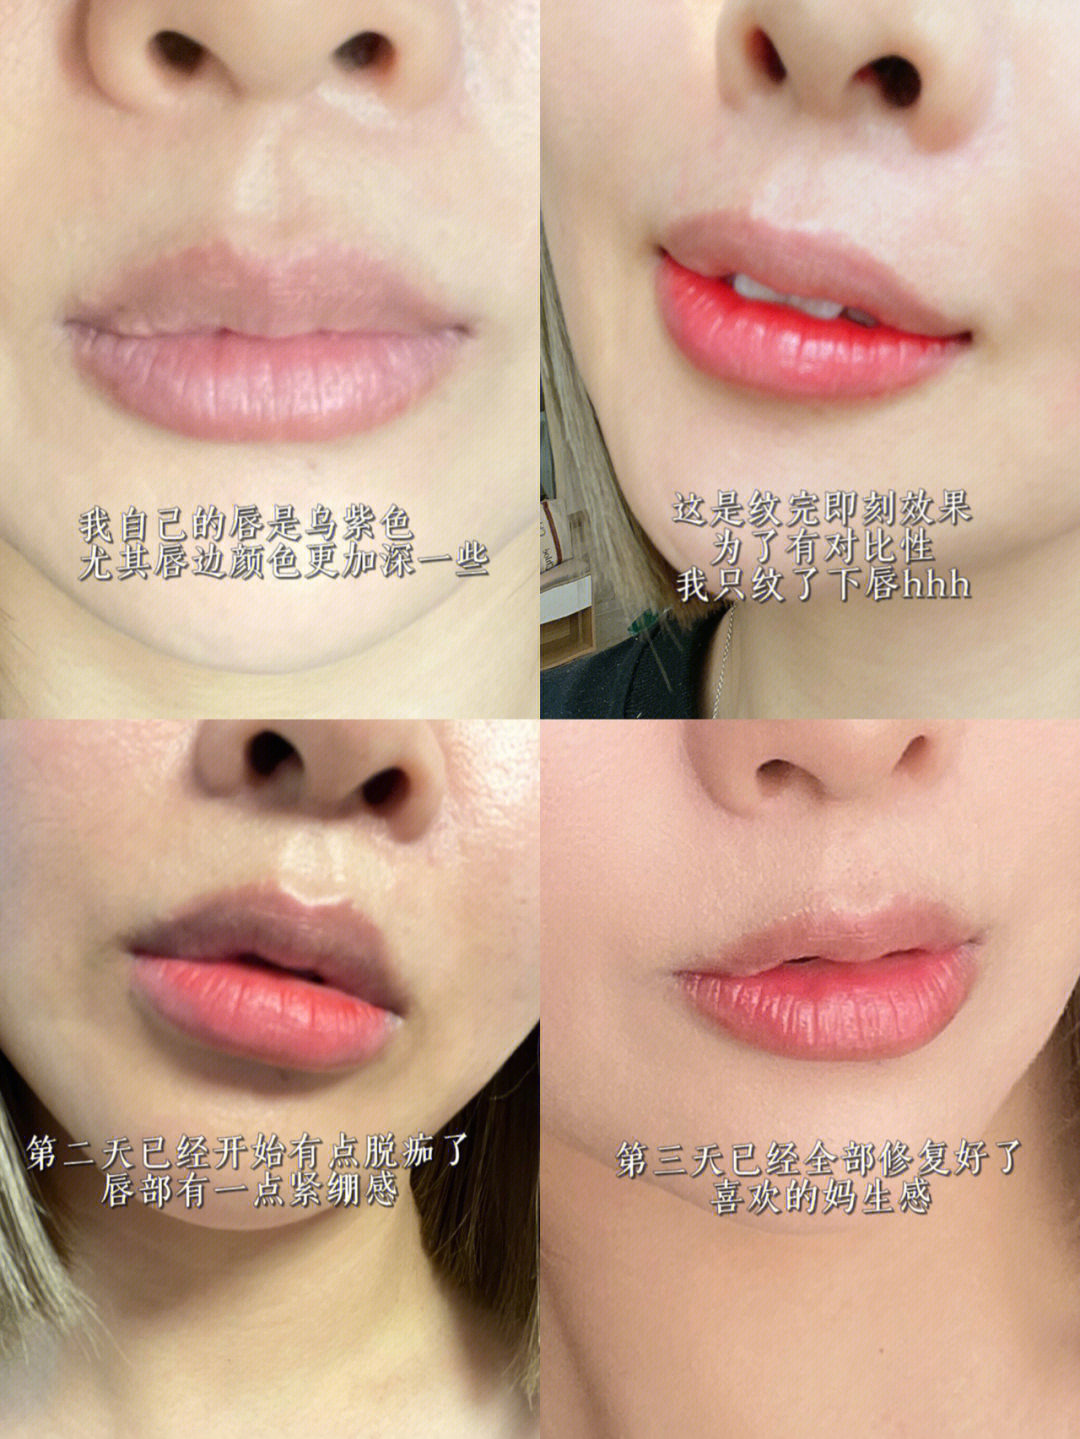 纹唇过程唇部修复过程分享给你们